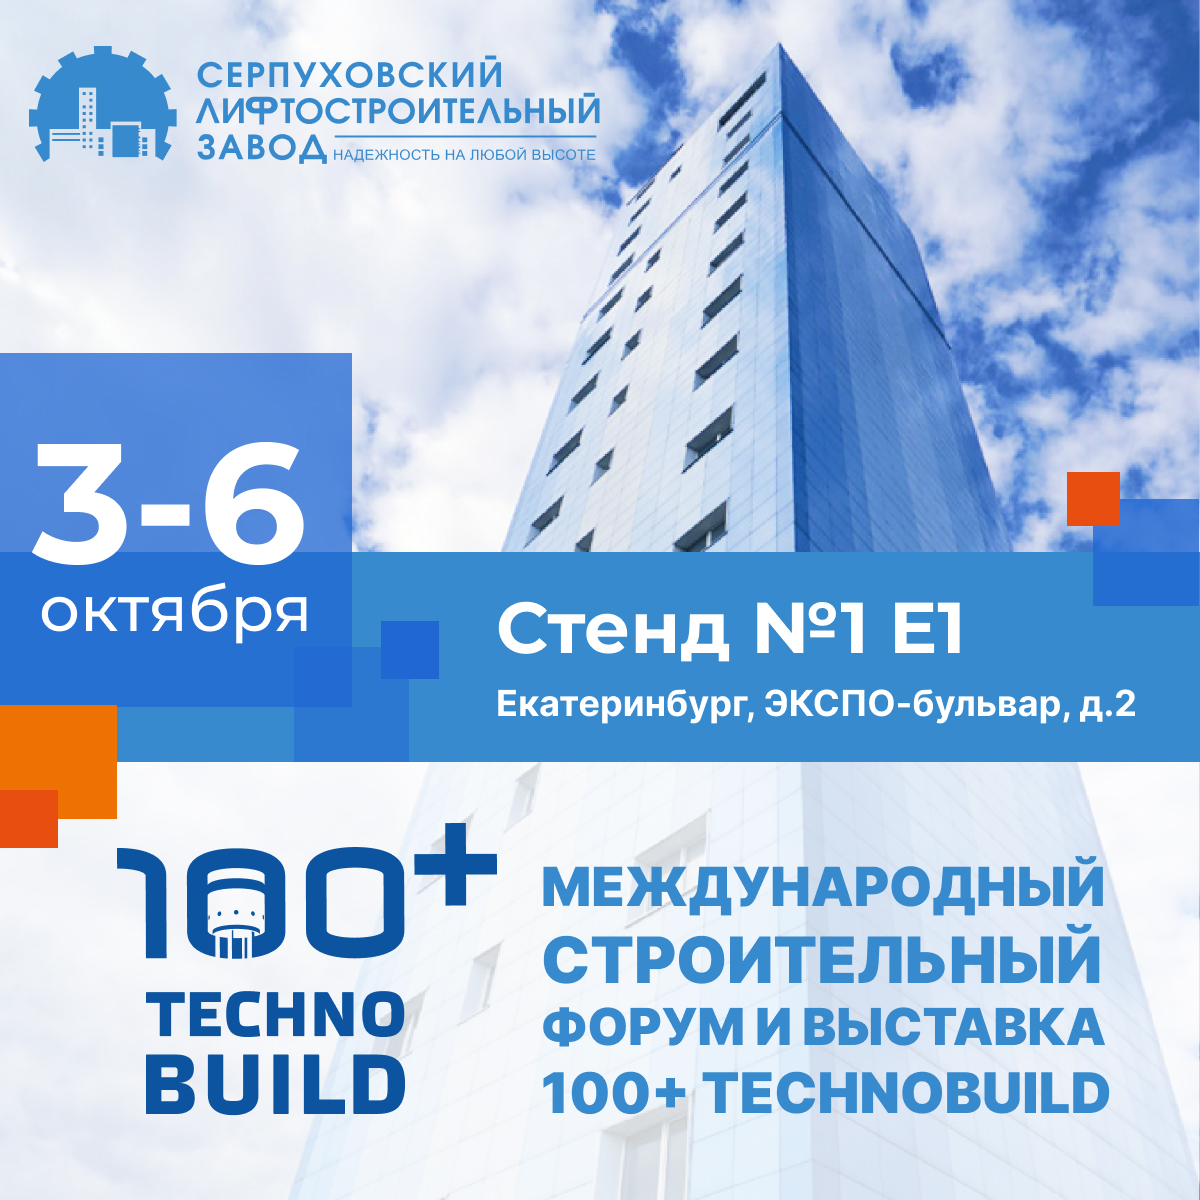 Международный строительный форум и выставка 100+ TechnoBuild в Екатеринбурге